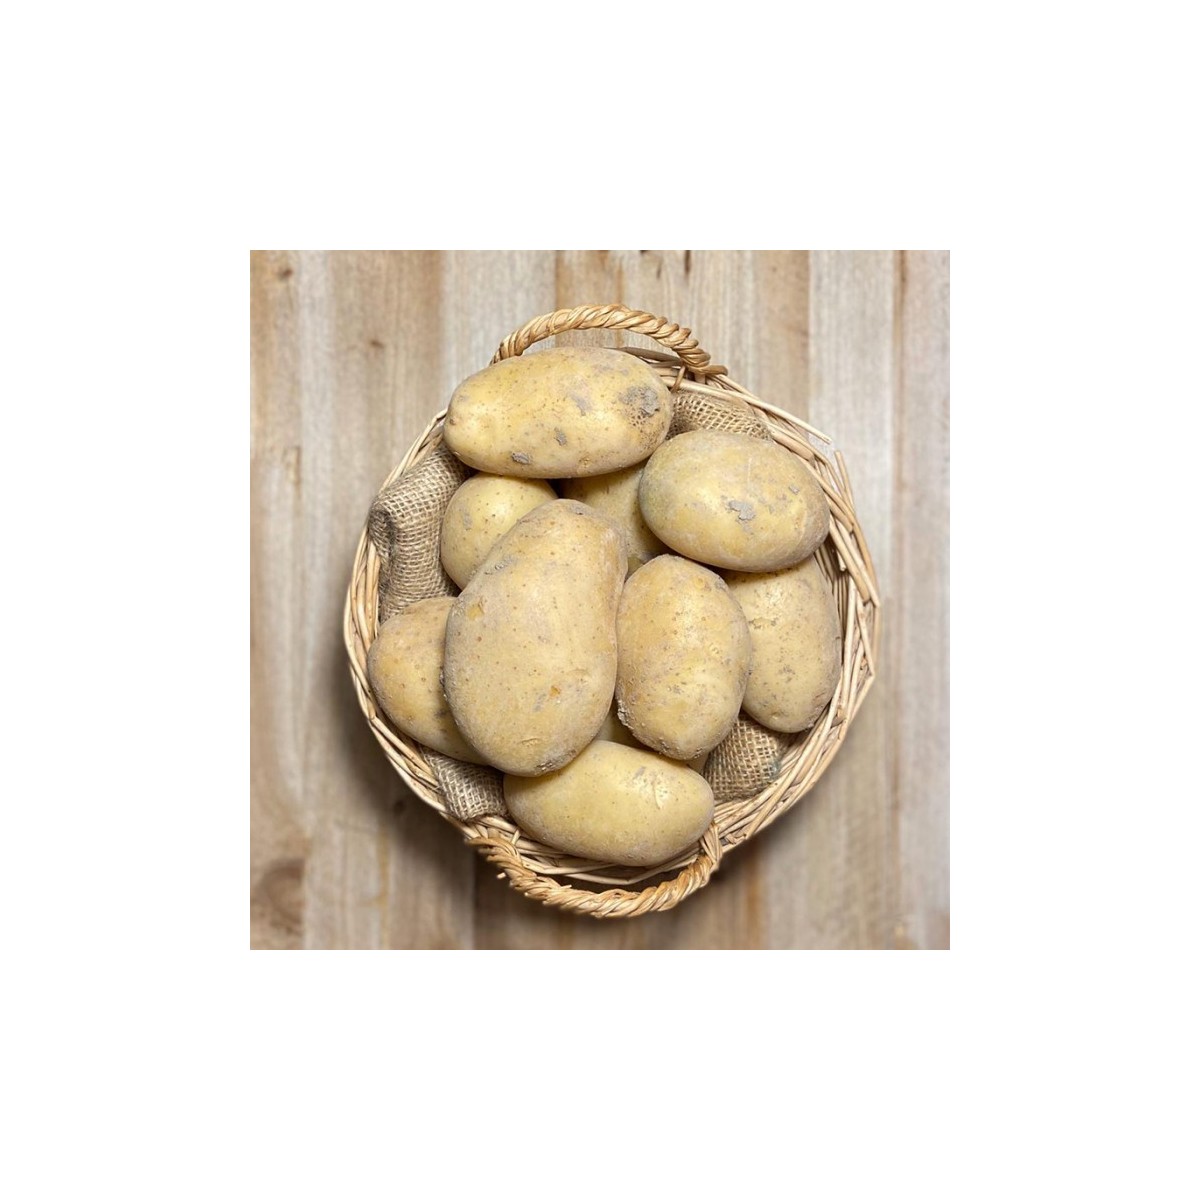 Patatas Spunta Vega baja - - Patatas, Cebollas y Ajos -1- Lo mejor de la fruta